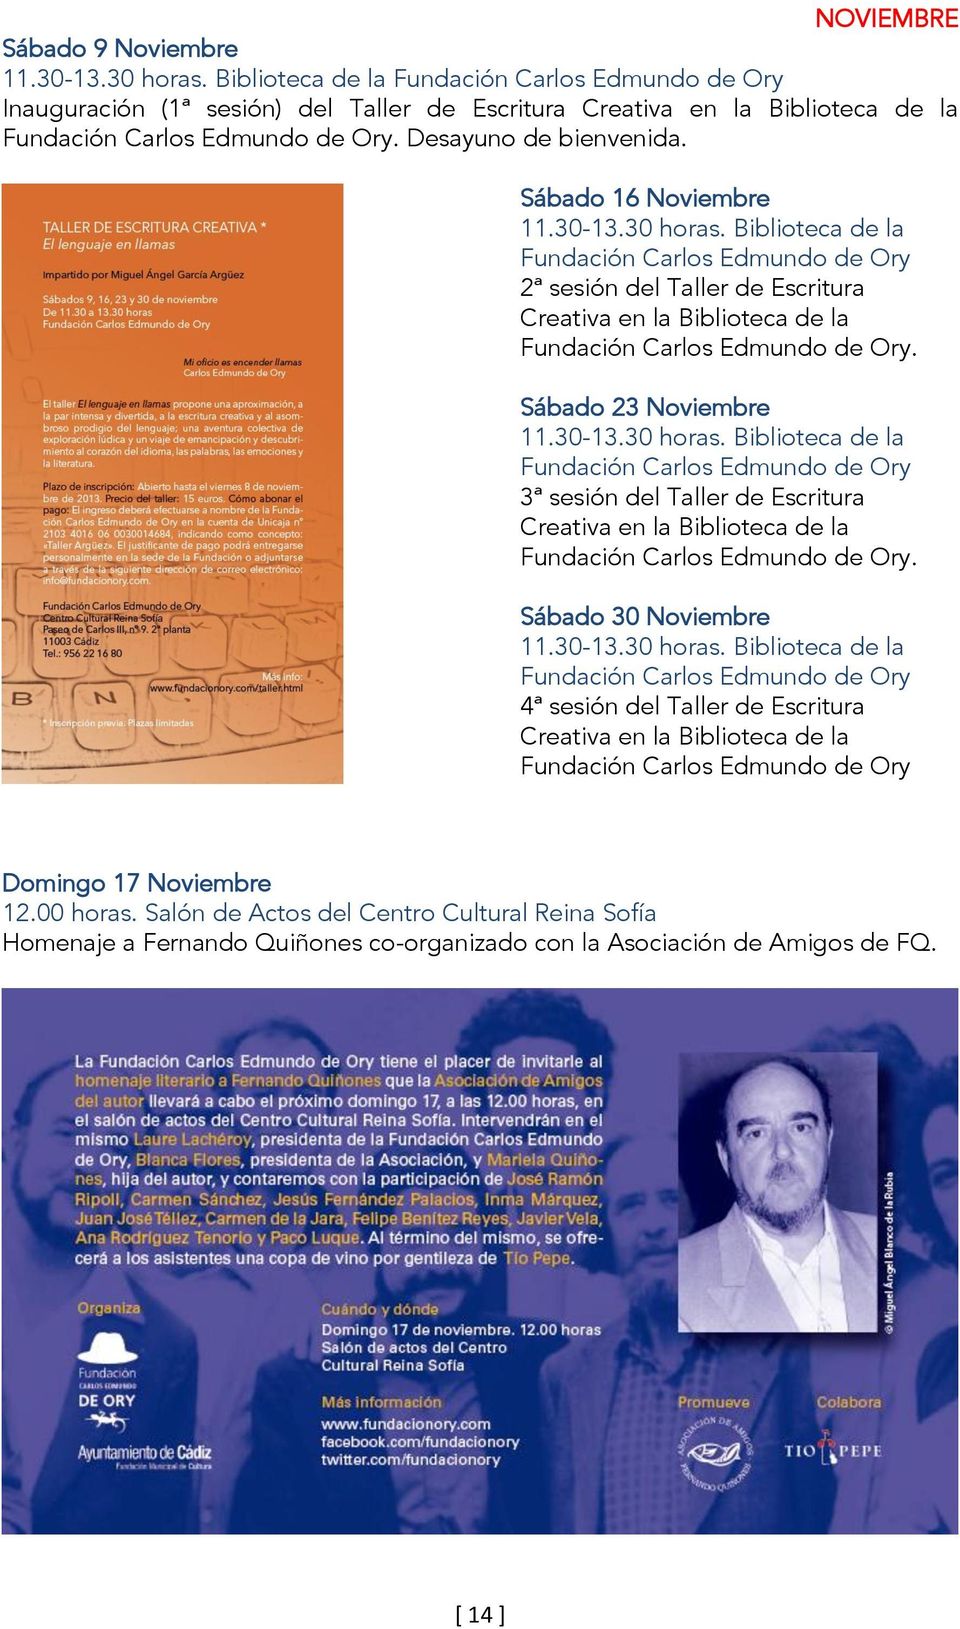 Sábado 16 Noviembre 11.30-13.30 horas. Biblioteca de la Fundación Carlos Edmundo de Ory 2ª sesión del Taller de Escritura Creativa en la Biblioteca de la Fundación Carlos Edmundo de Ory.